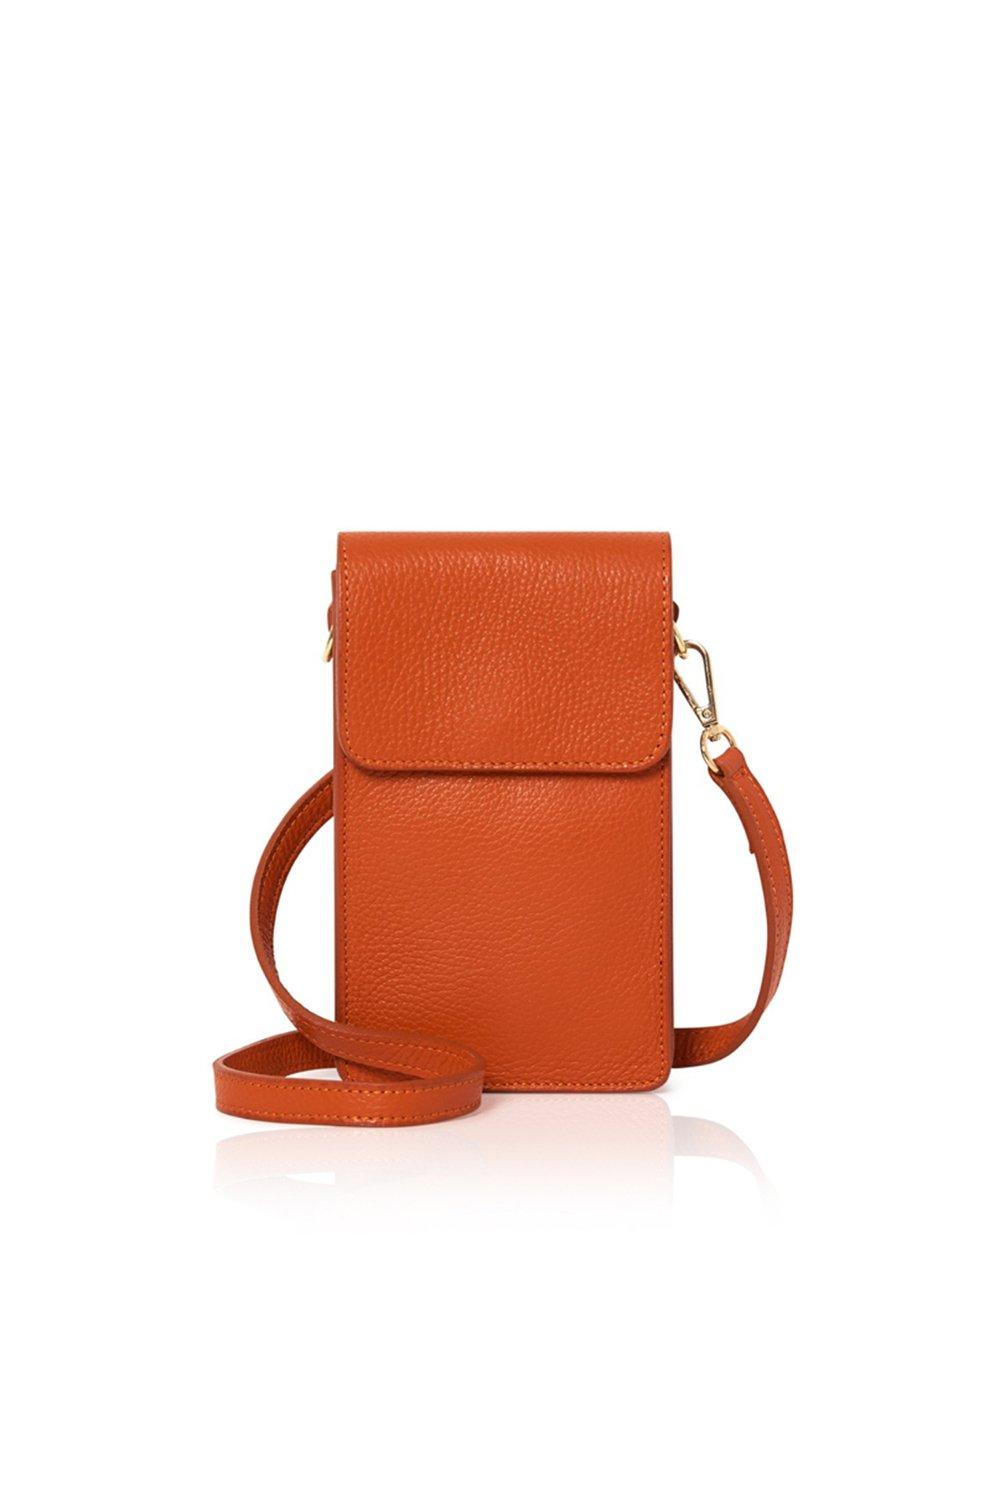 Маленькая сумка через плечо 'Vico' Betsy & Floss, оранжевый